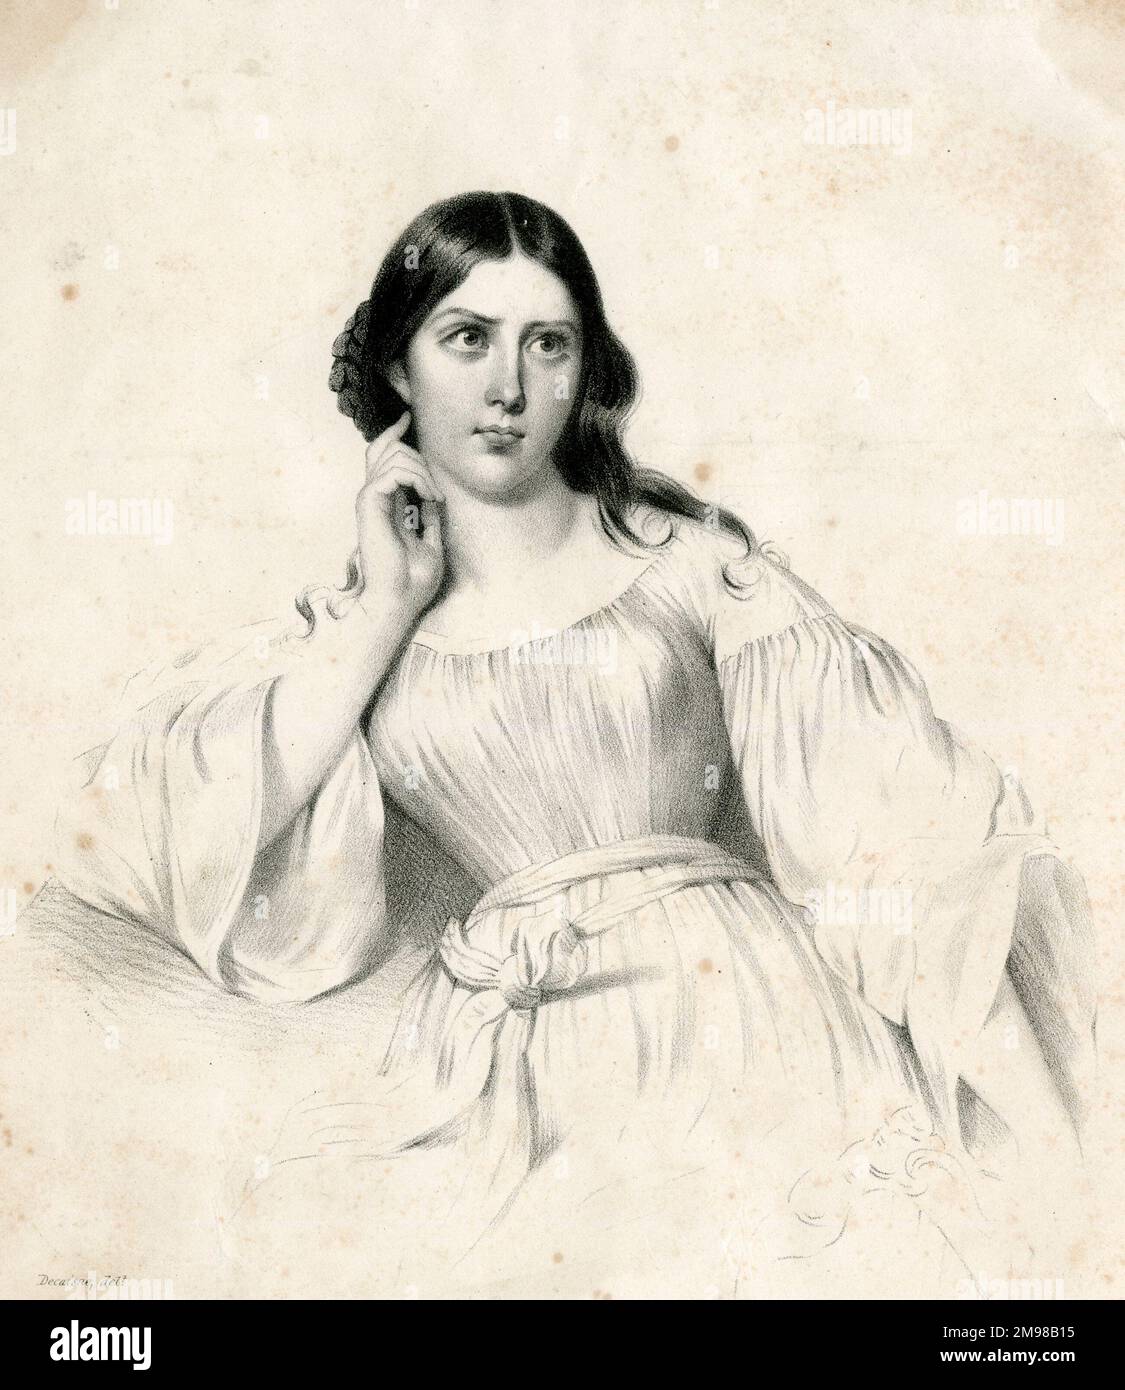 Maria Malibran de Beriot (1808-1836), Spanish mezzo-soprano, in the role of Desdemona in Rossini's opera Otello. Stock Photo